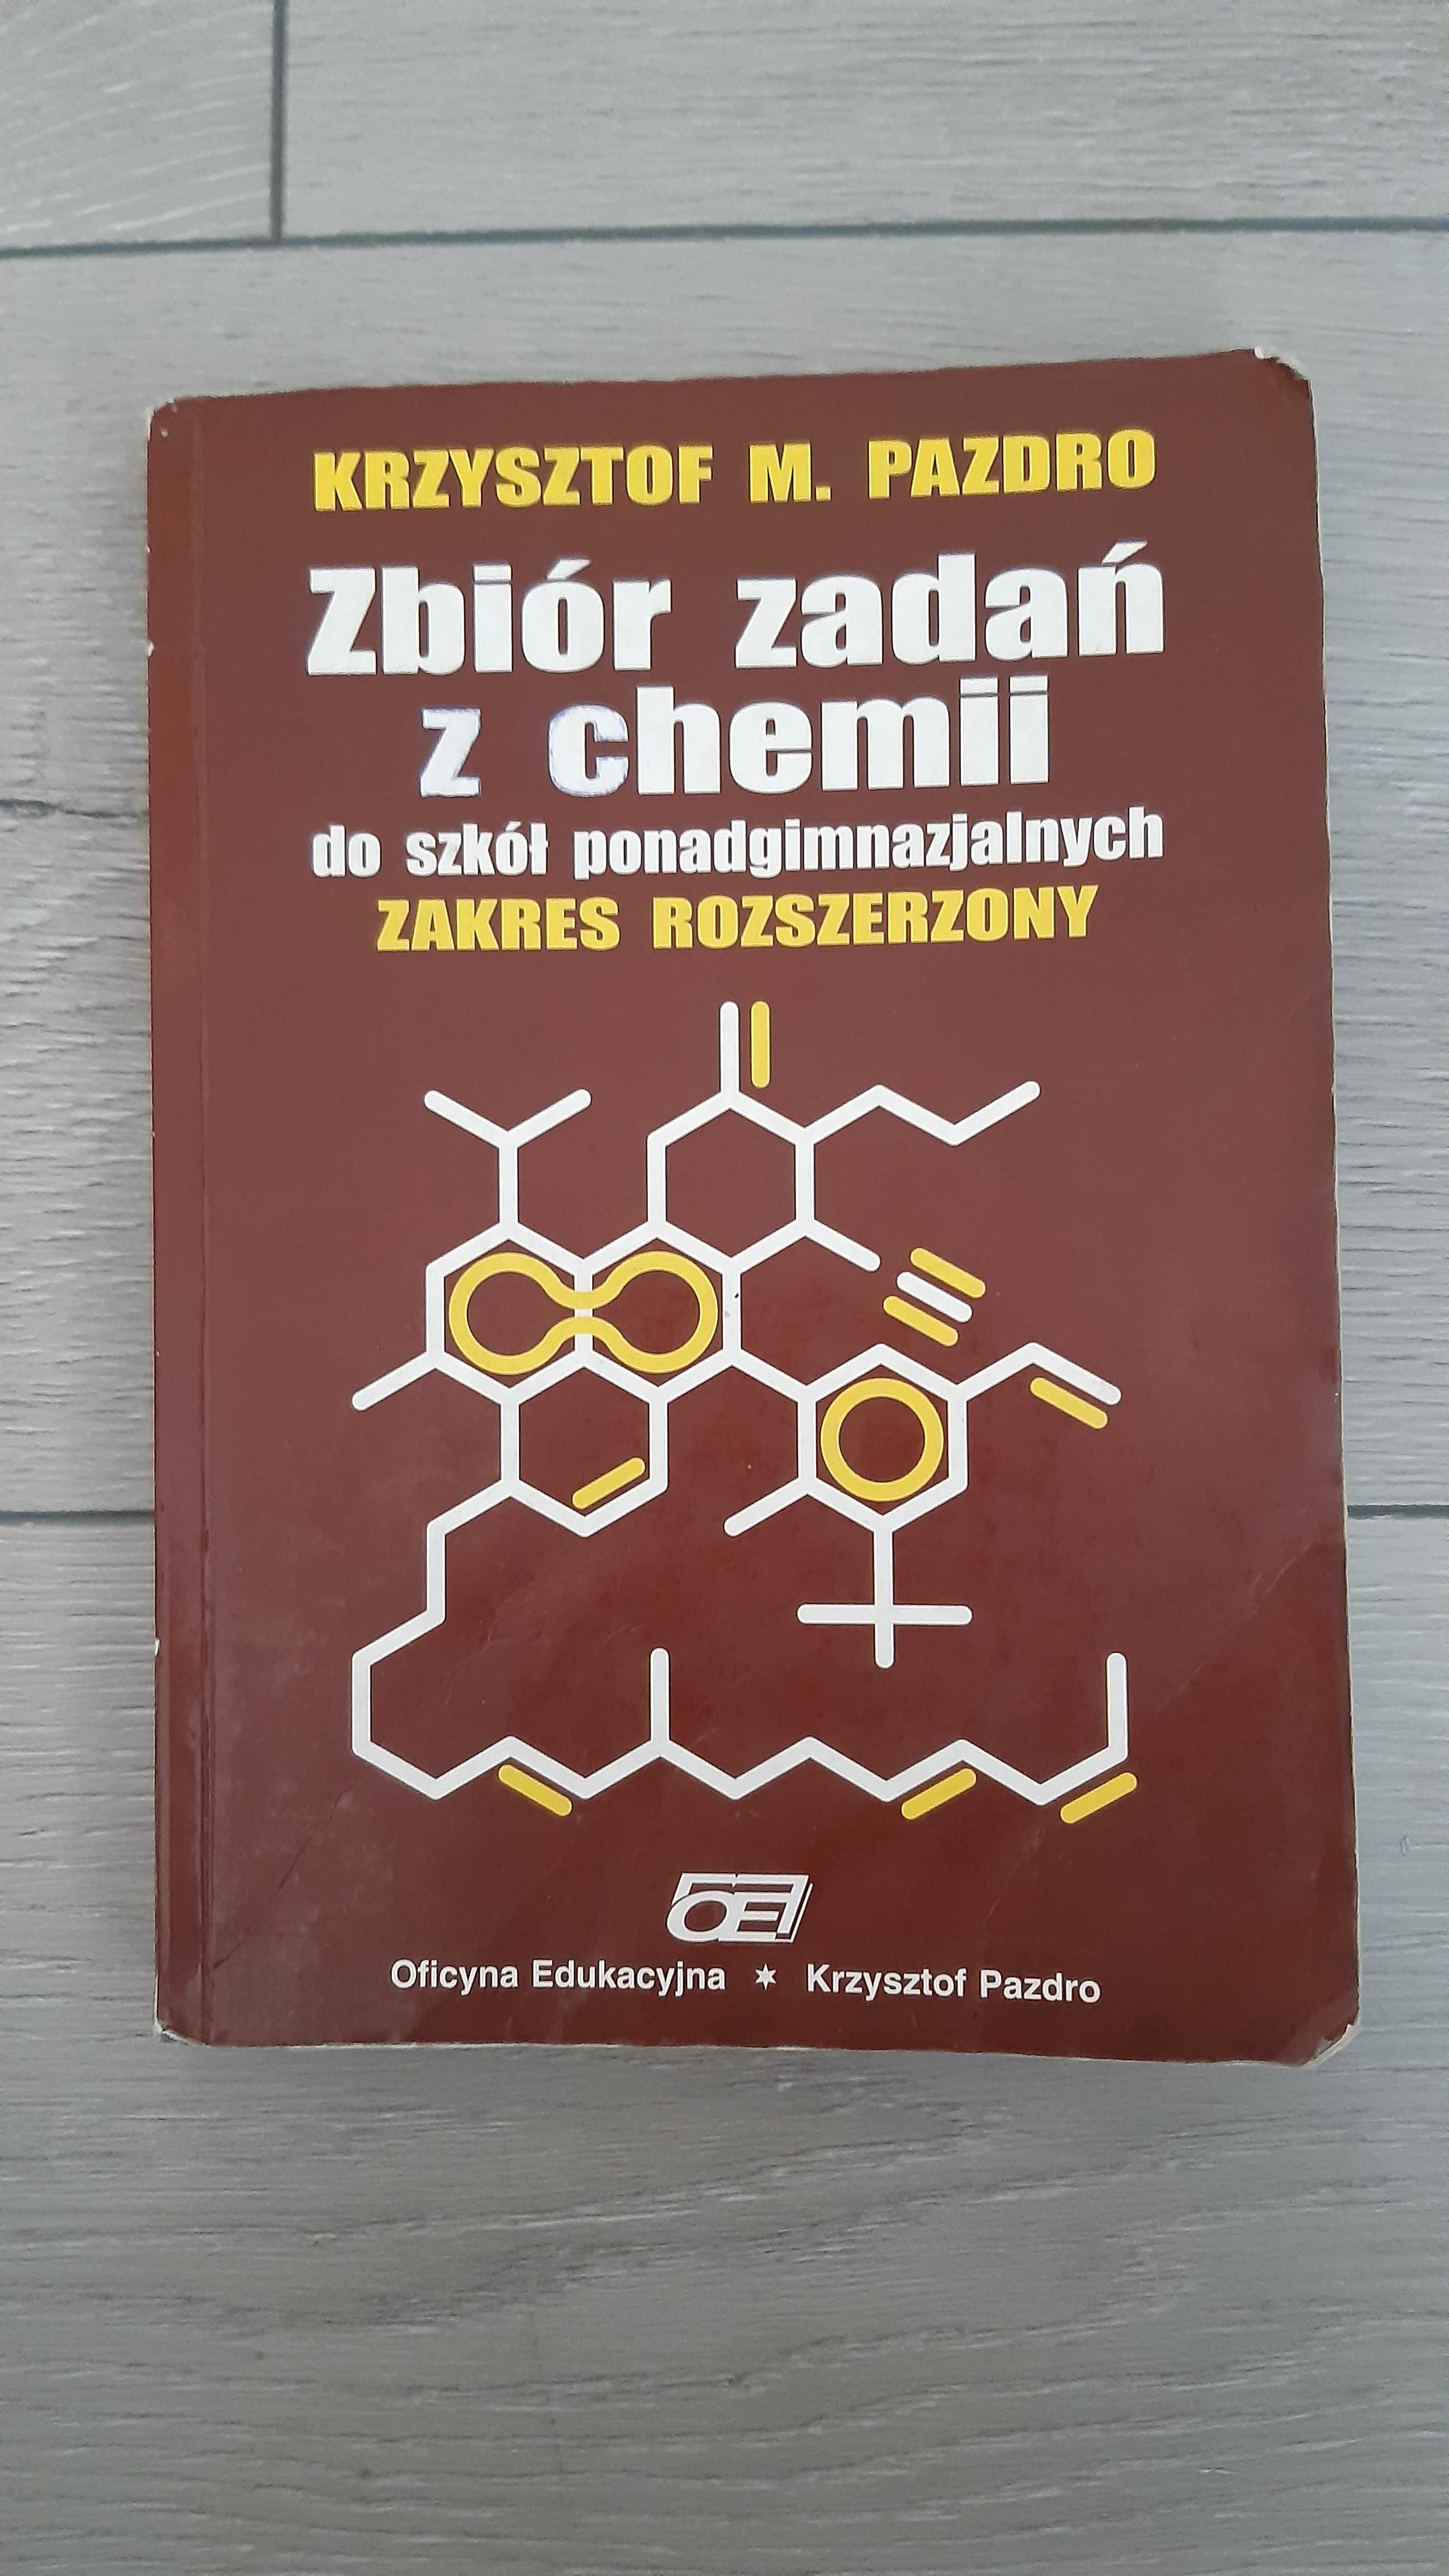 Zbiór zadań z chemii zakres rozszerzony  Krzysztof M. Pazdro